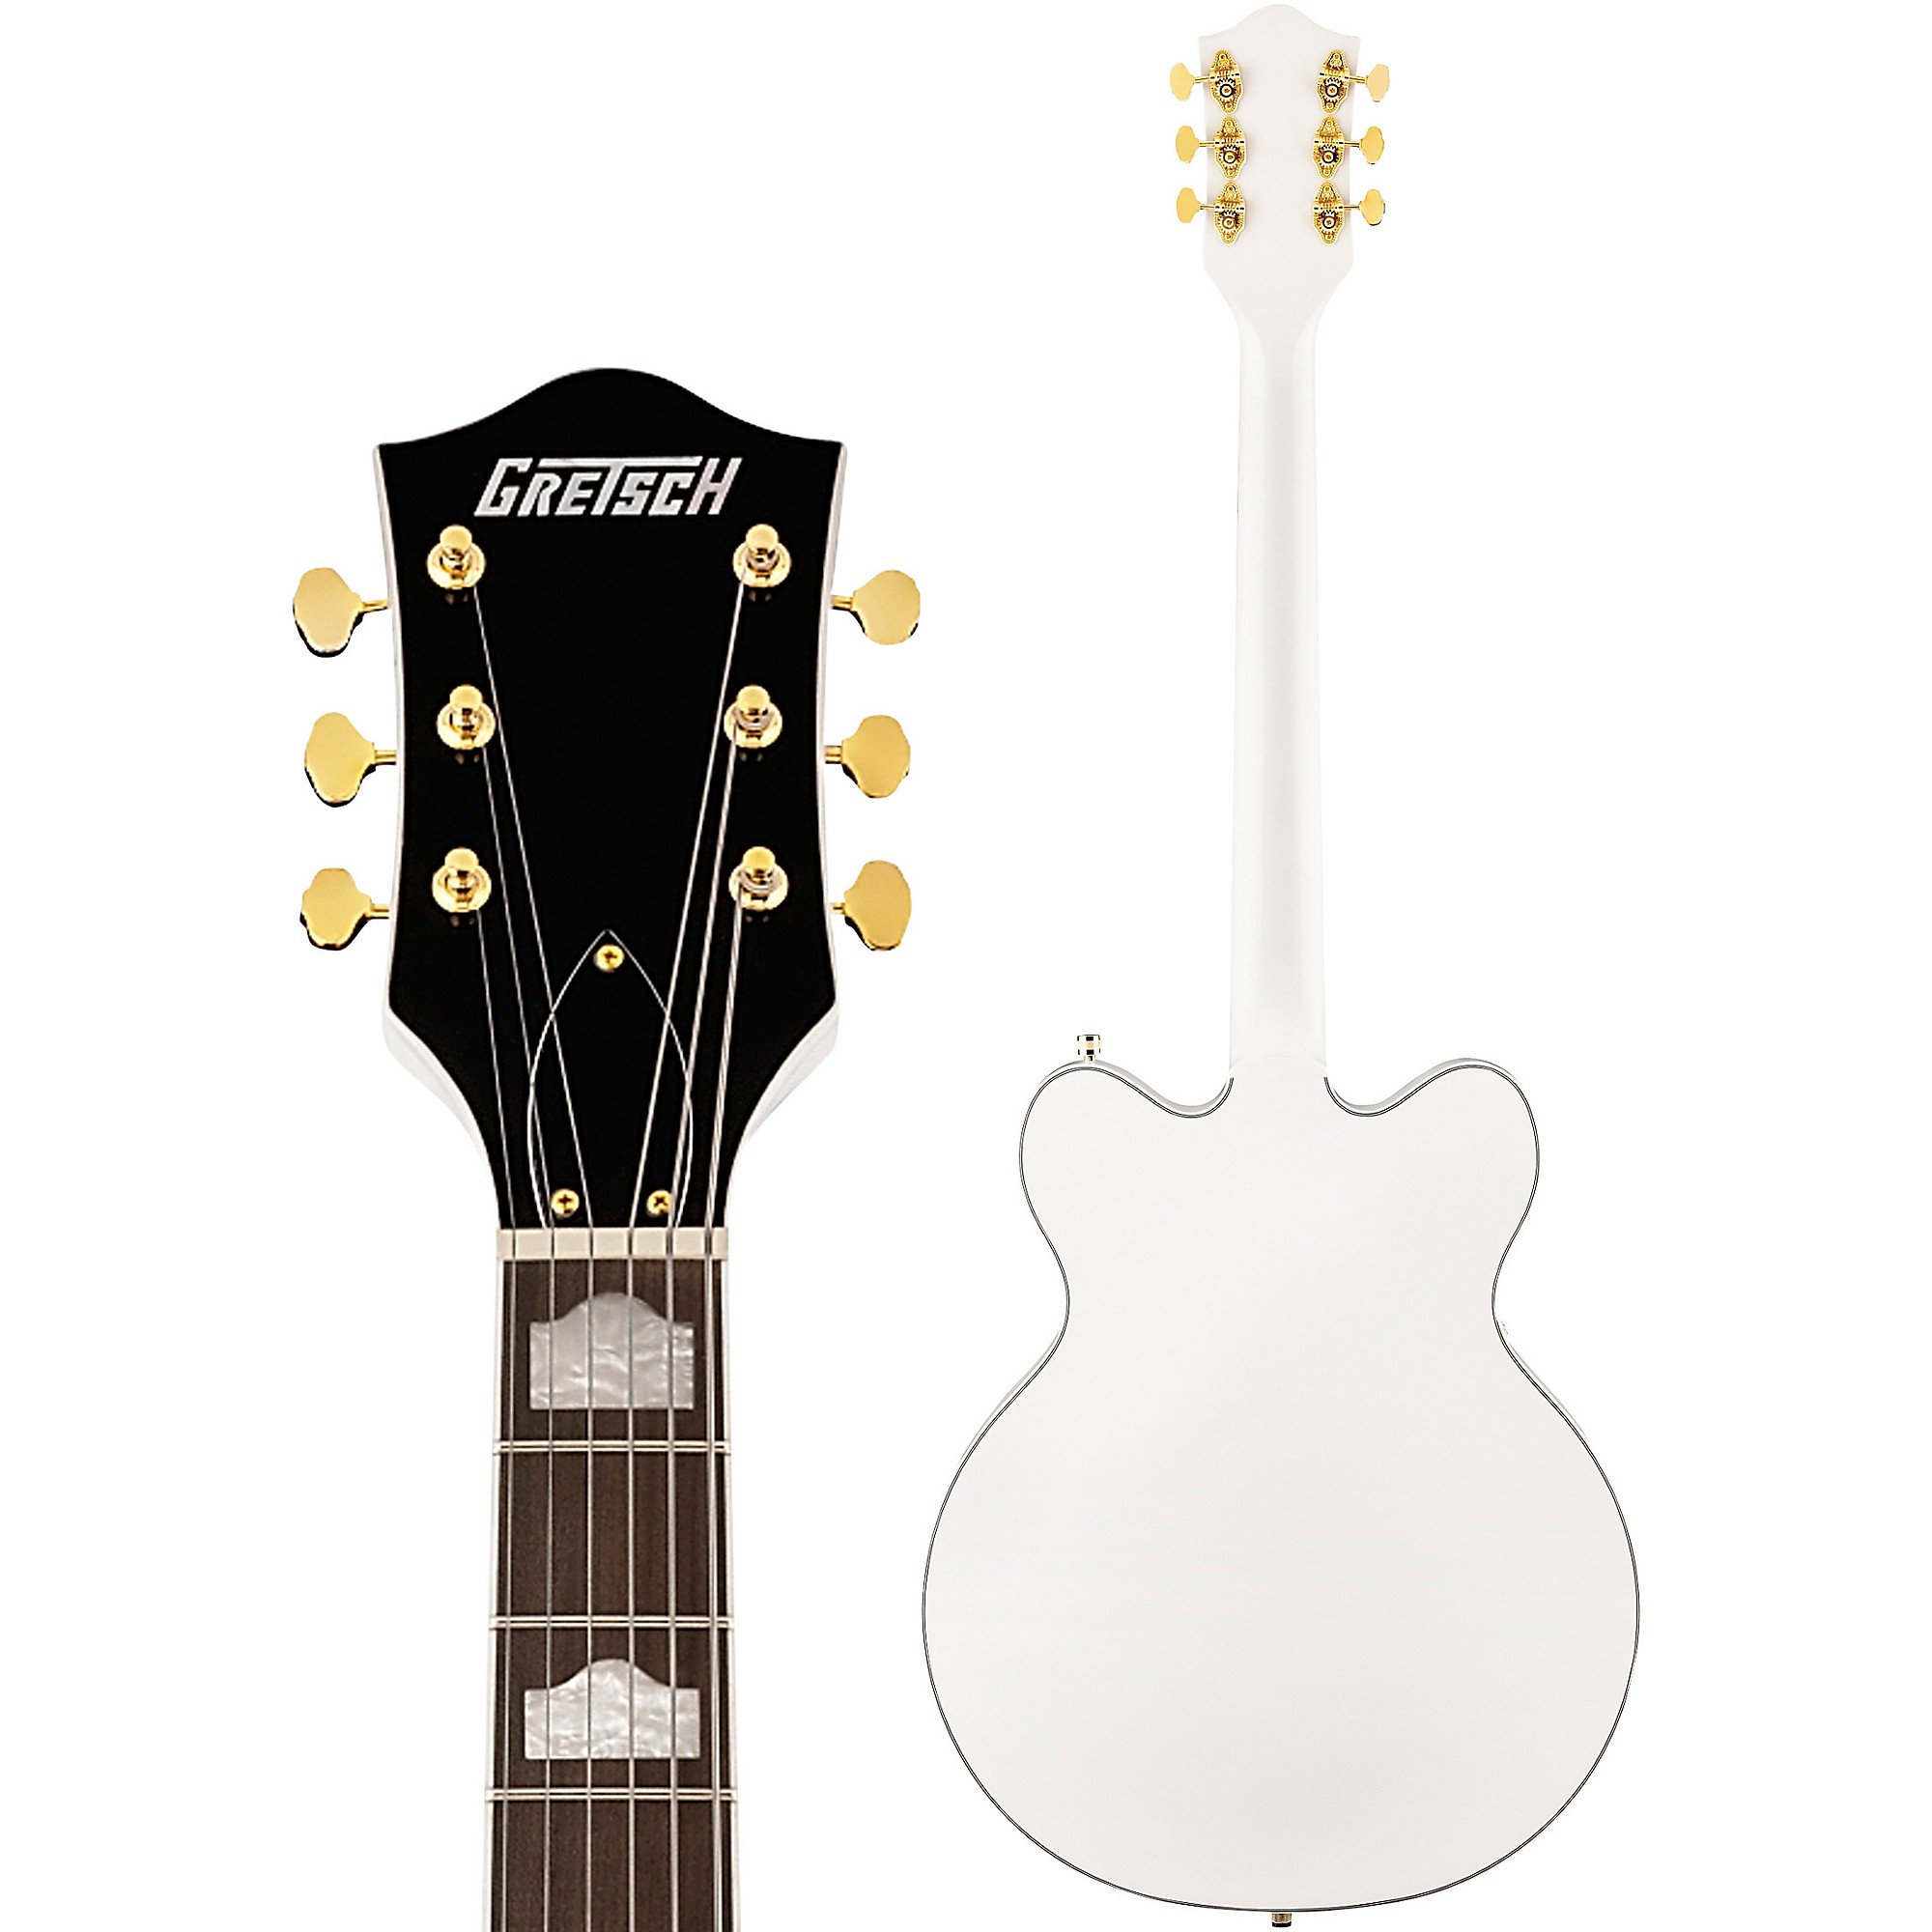 Gretsch Guitars G5422GLH Электроматическая классическая полая гитара с двойным вырезом и золотой фурнитурой Электрогитара для левой руки Snow Crest White